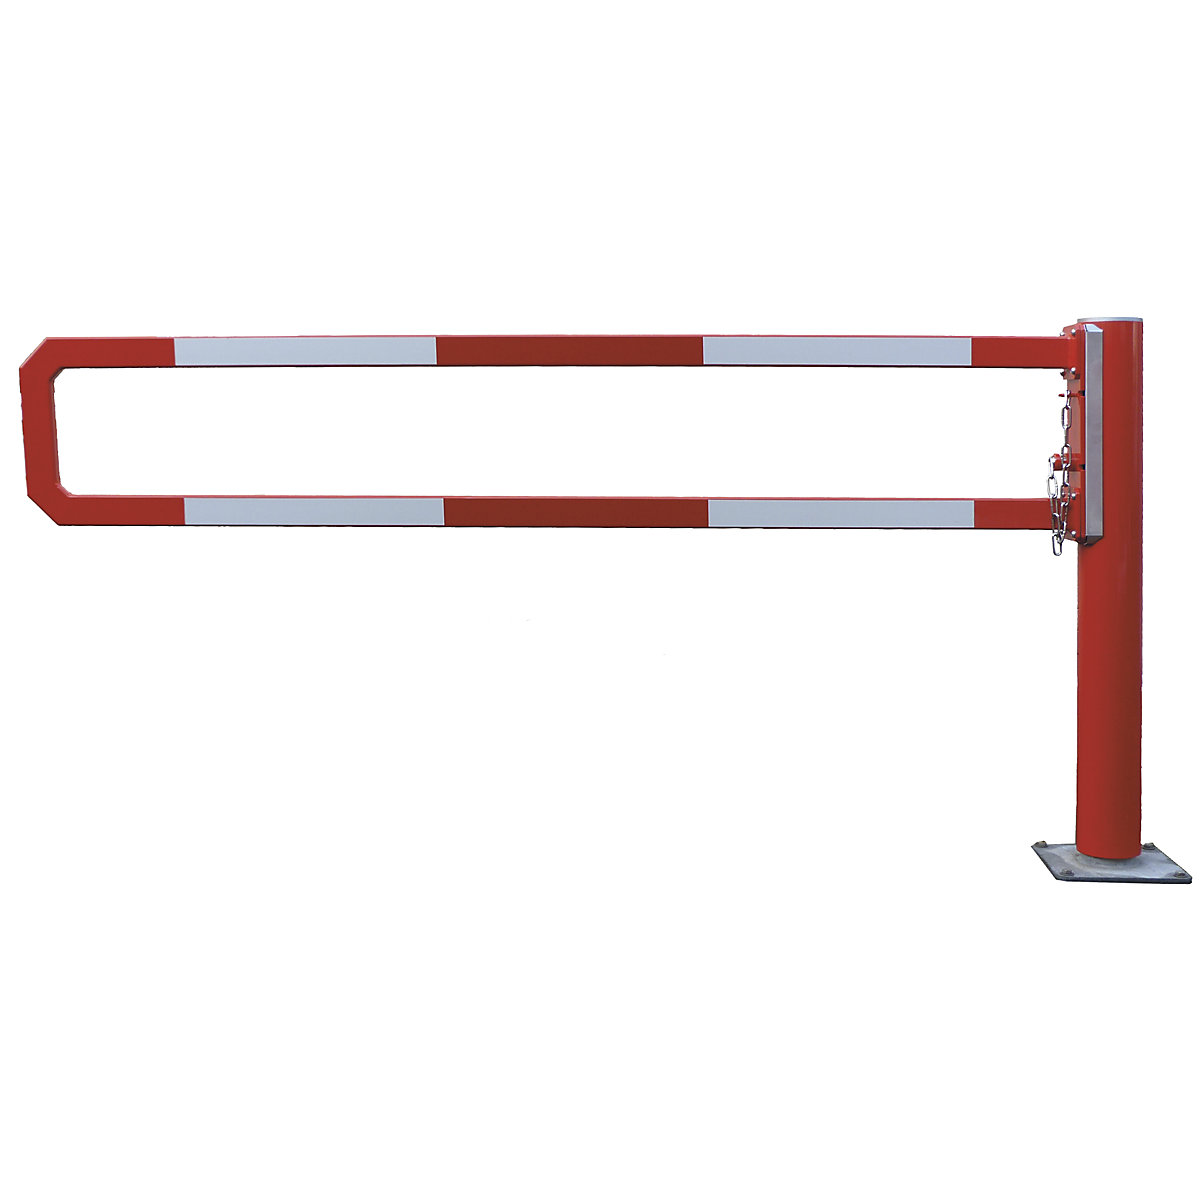 Mannus – Sbarramento girevole, lunghezza sbarra 2,5 m, zincatura a fuoco, verniciatura a polvere aggiuntiva in rosso